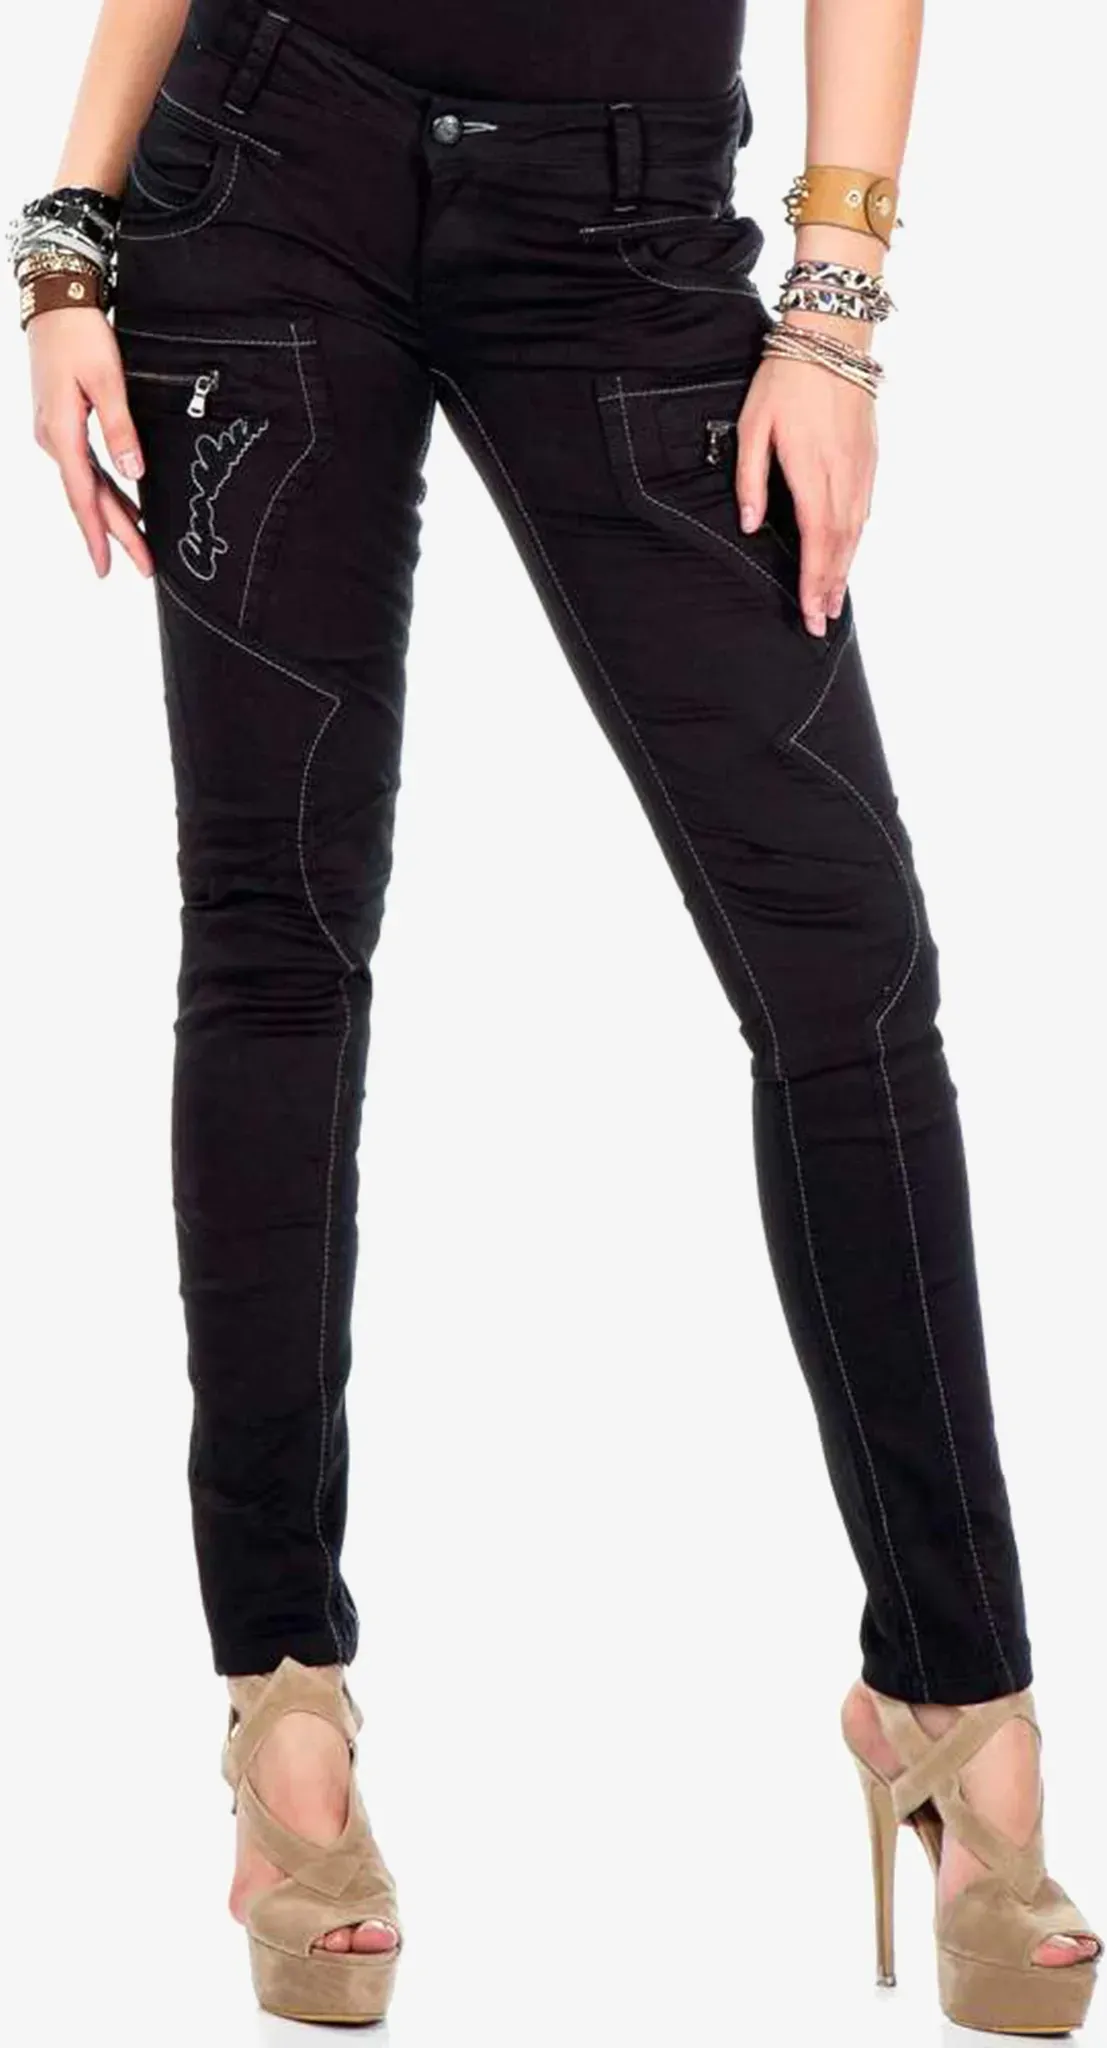 Slim-fit-Jeans CIPO & BAXX Gr. 26, Länge 32, schwarz Damen Jeans Röhrenjeans mit ausgefallenen Ziernähten